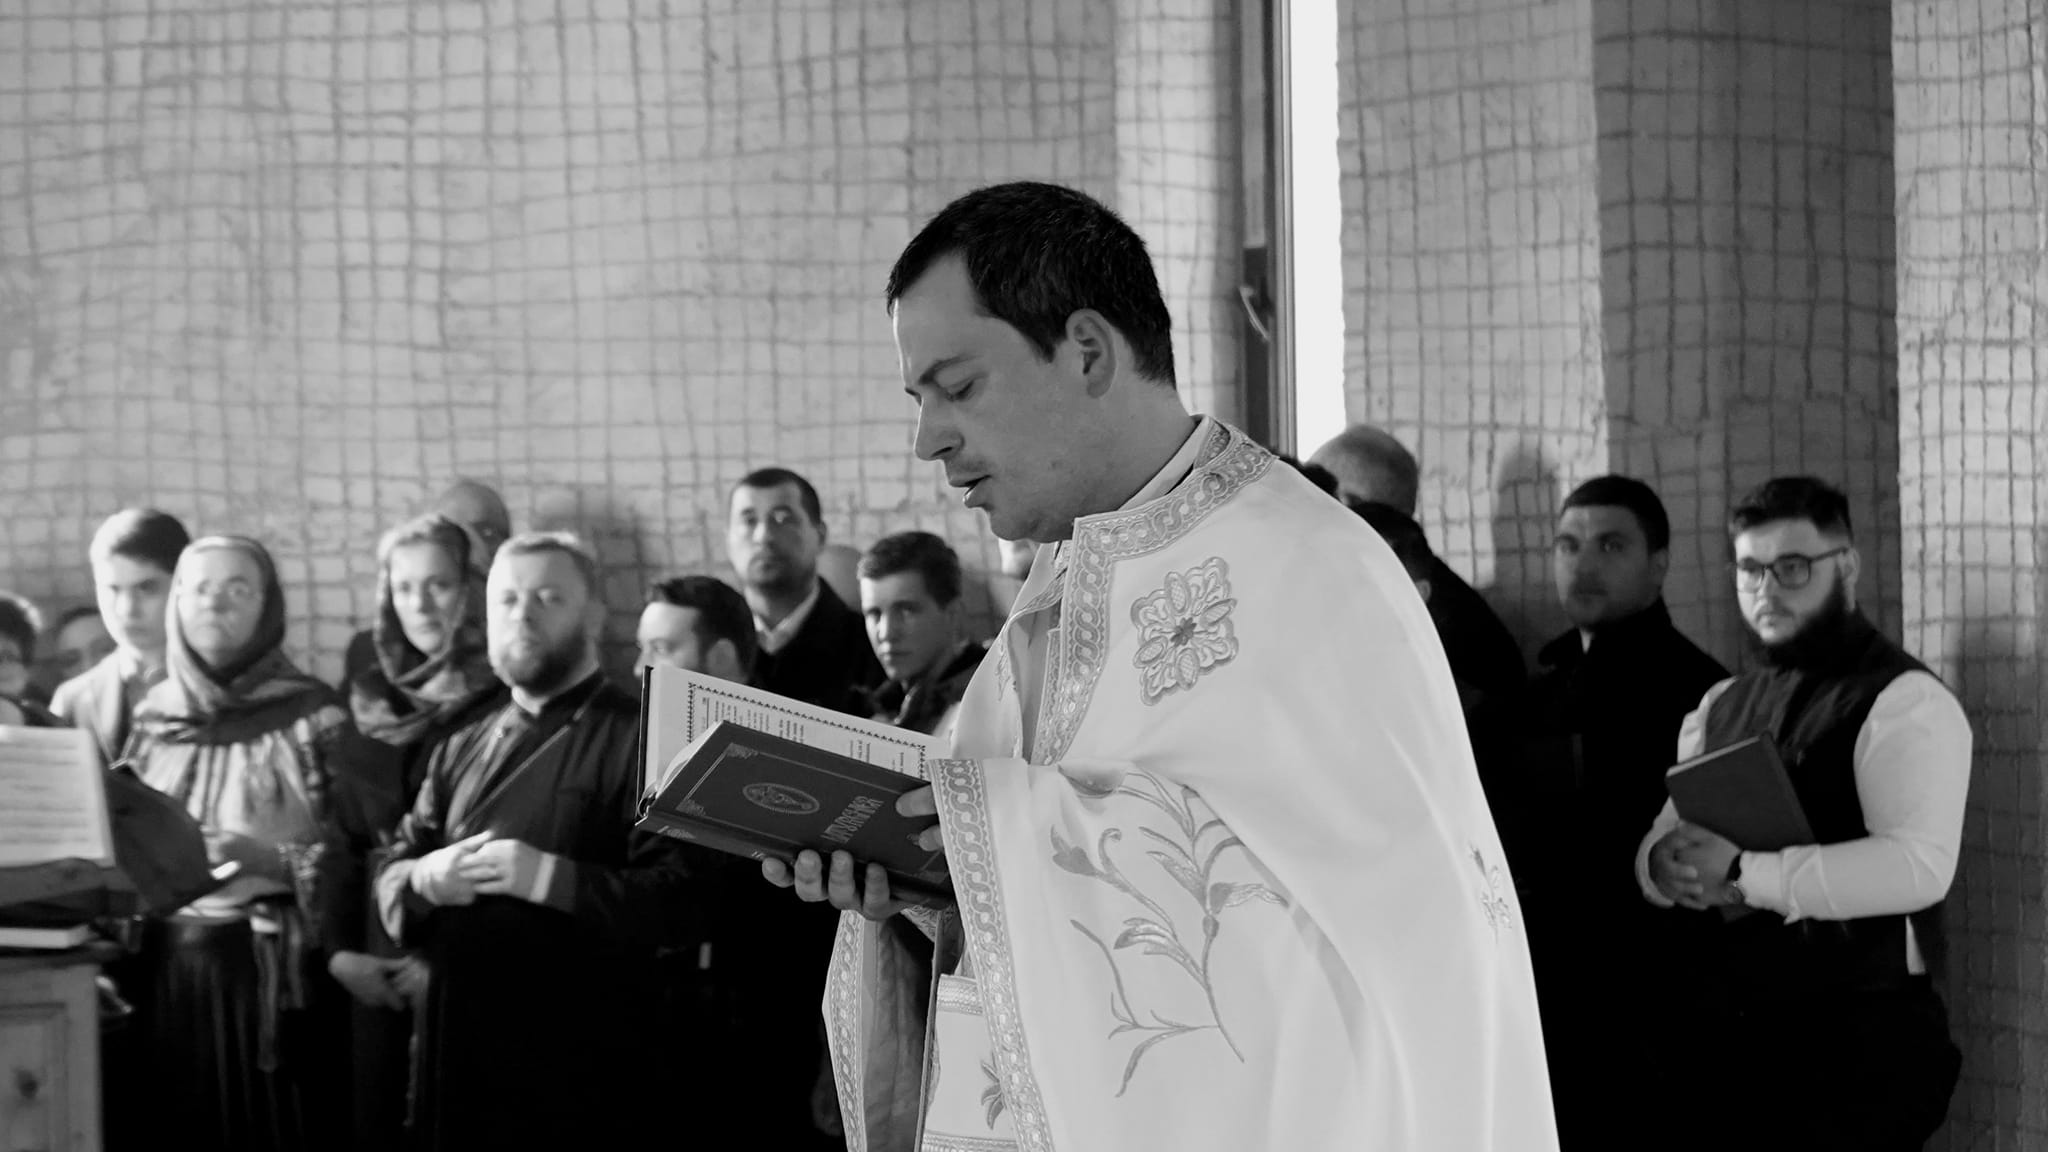 Preot din județul Suceava, decedat subit, la doar 34 de ani